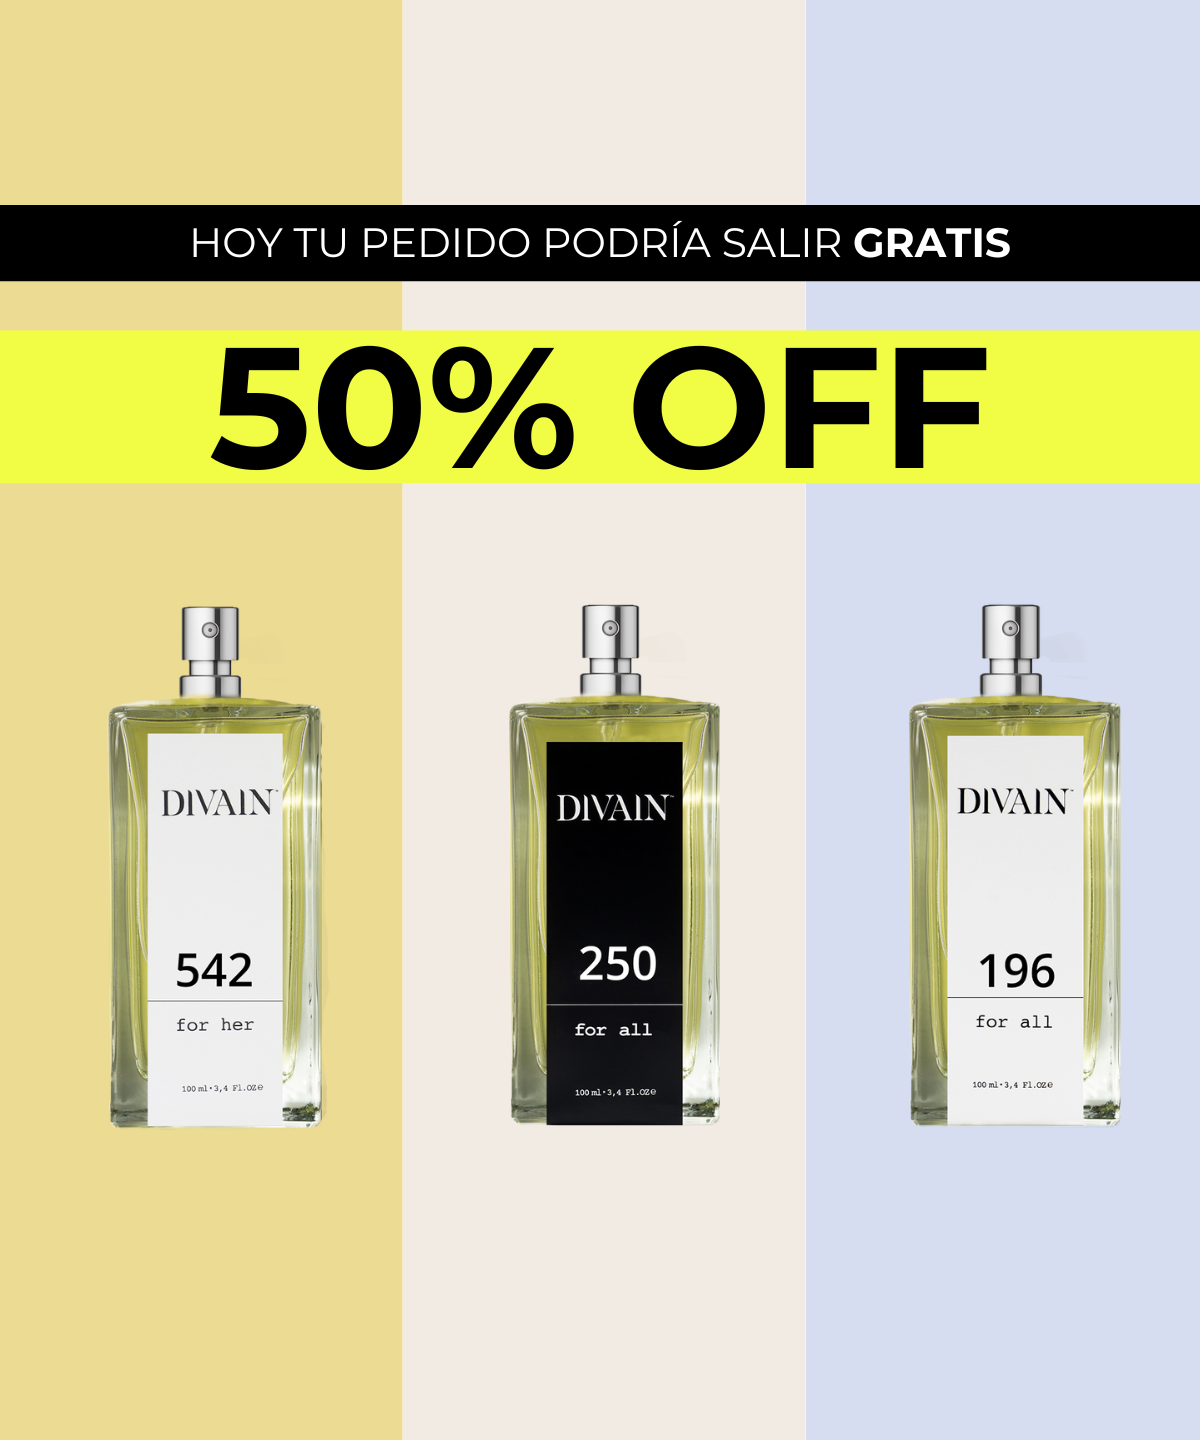 Perfumes DIVAIN. Aprovecha la mejor oferta de perfumes del 50% en todos los perfumes. ¡Y hoy tu pedido podría salir gratis!